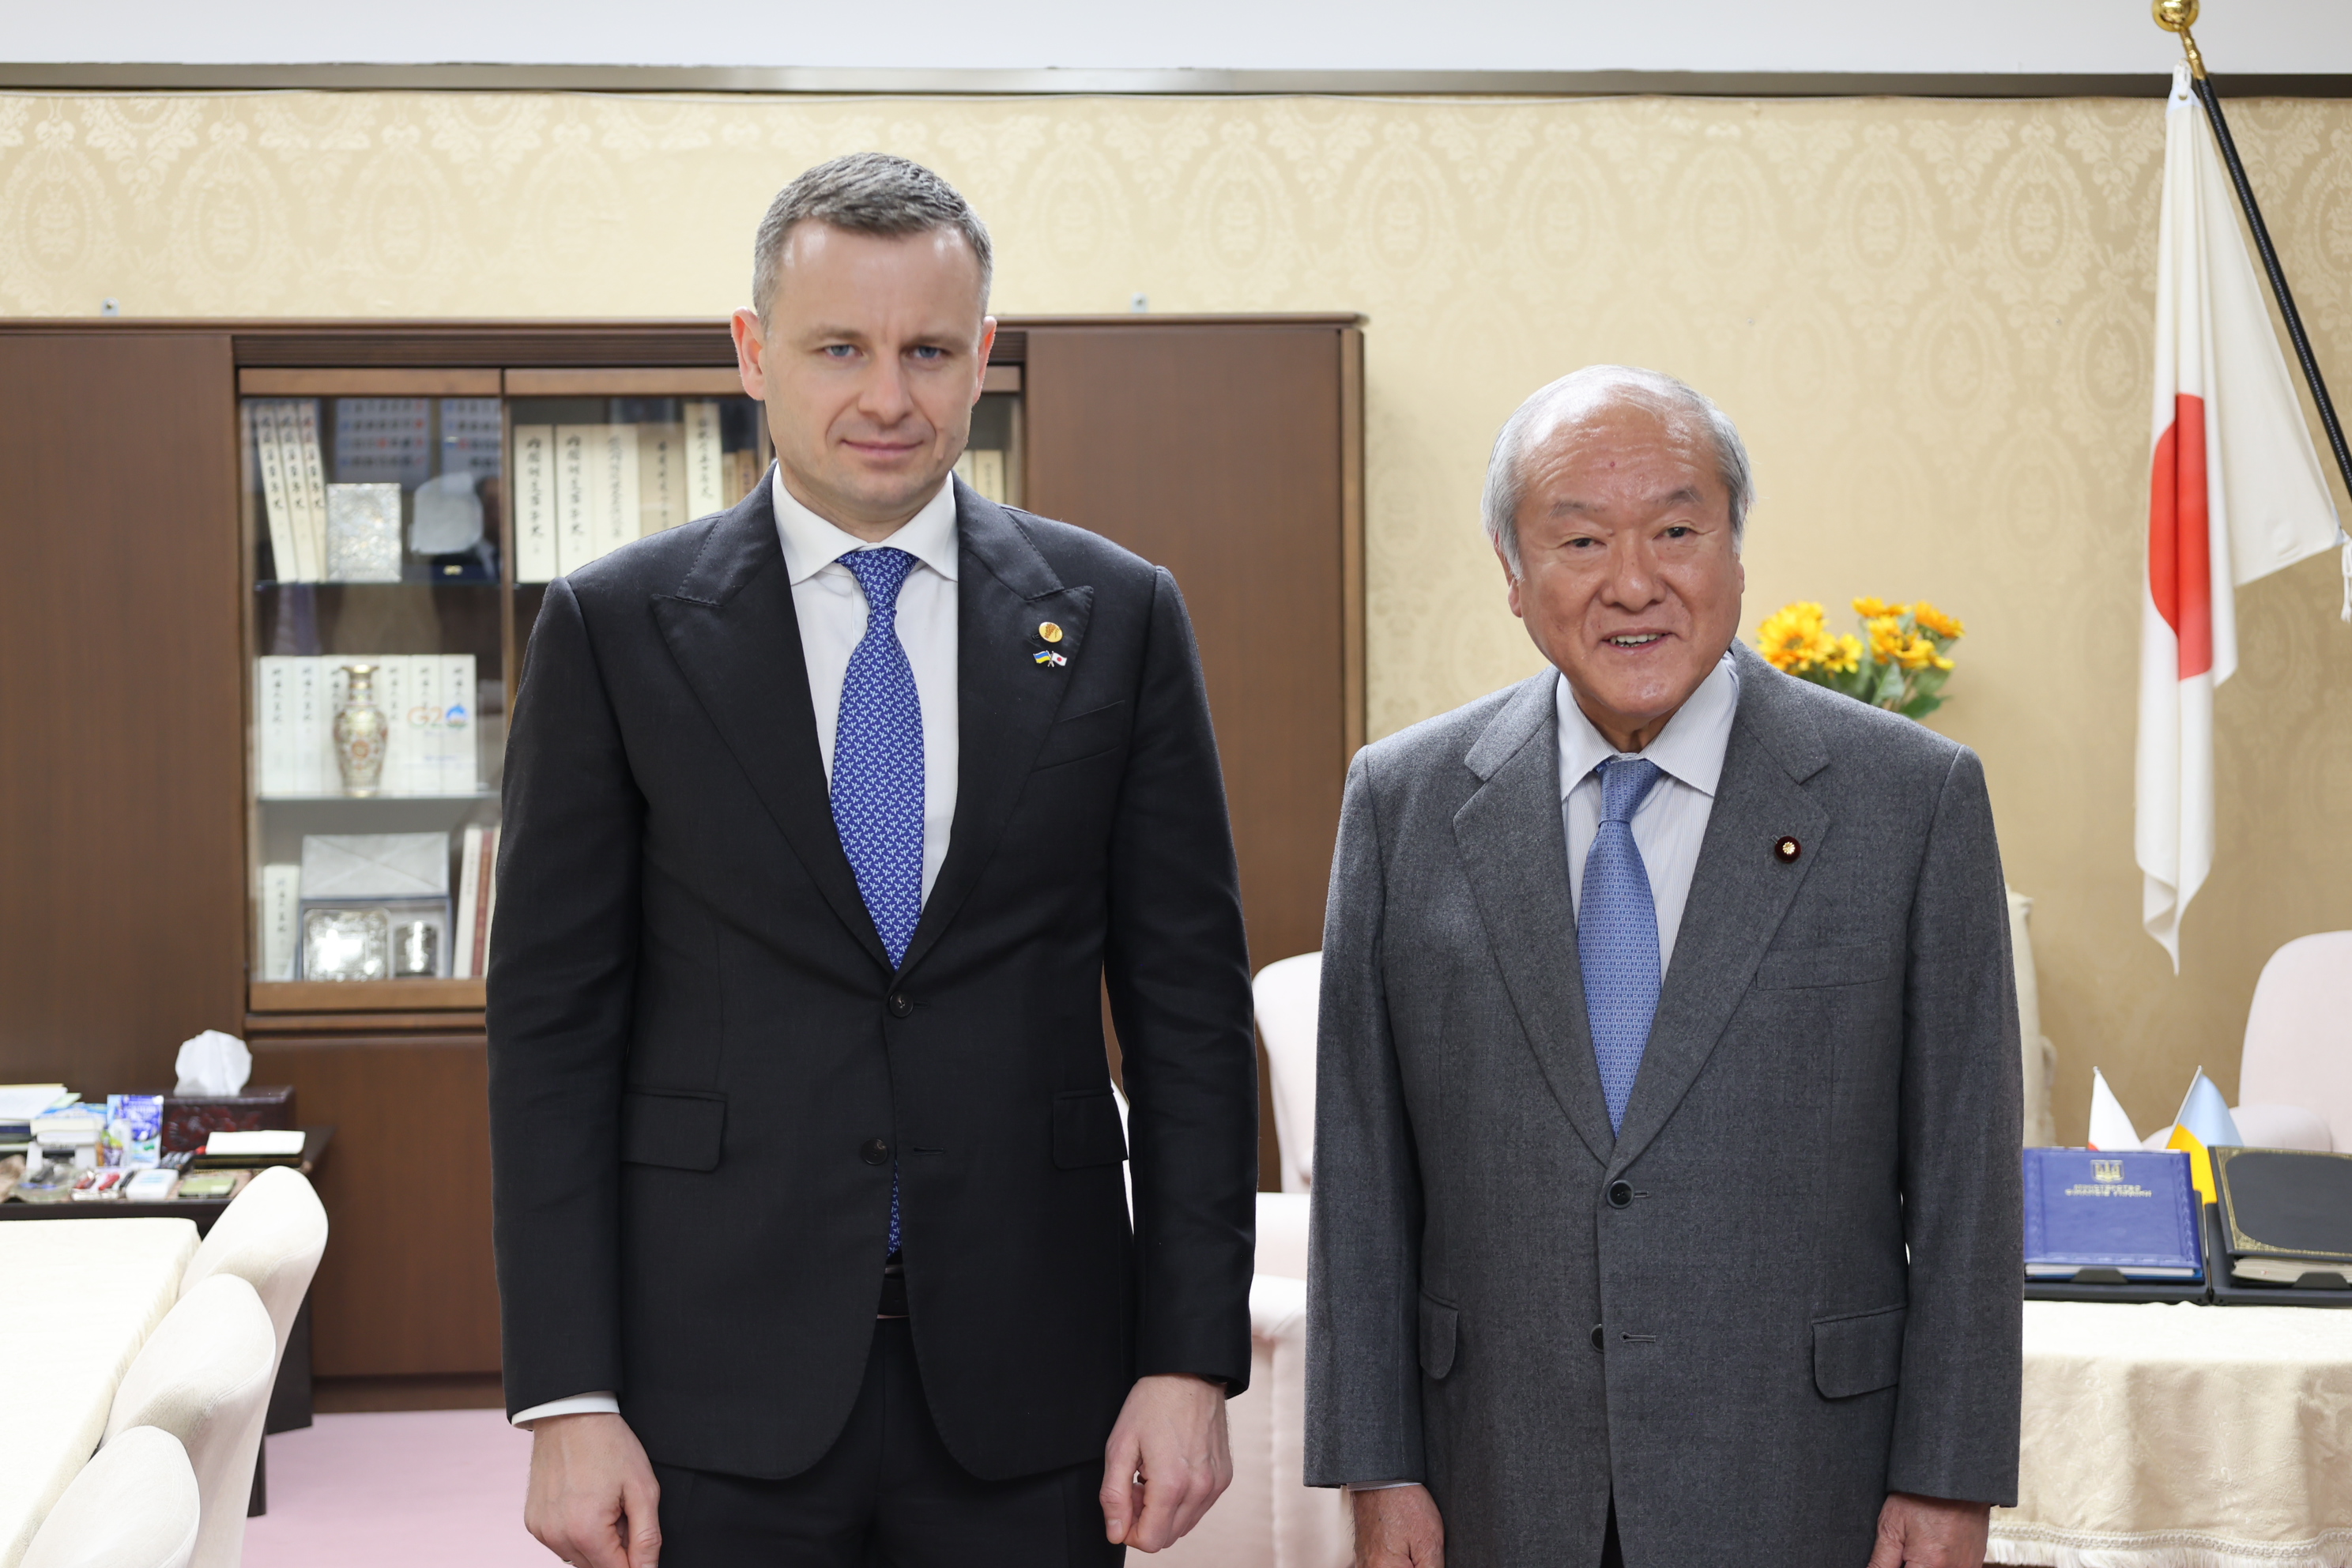 鈴木大臣とマルチェンコ大臣